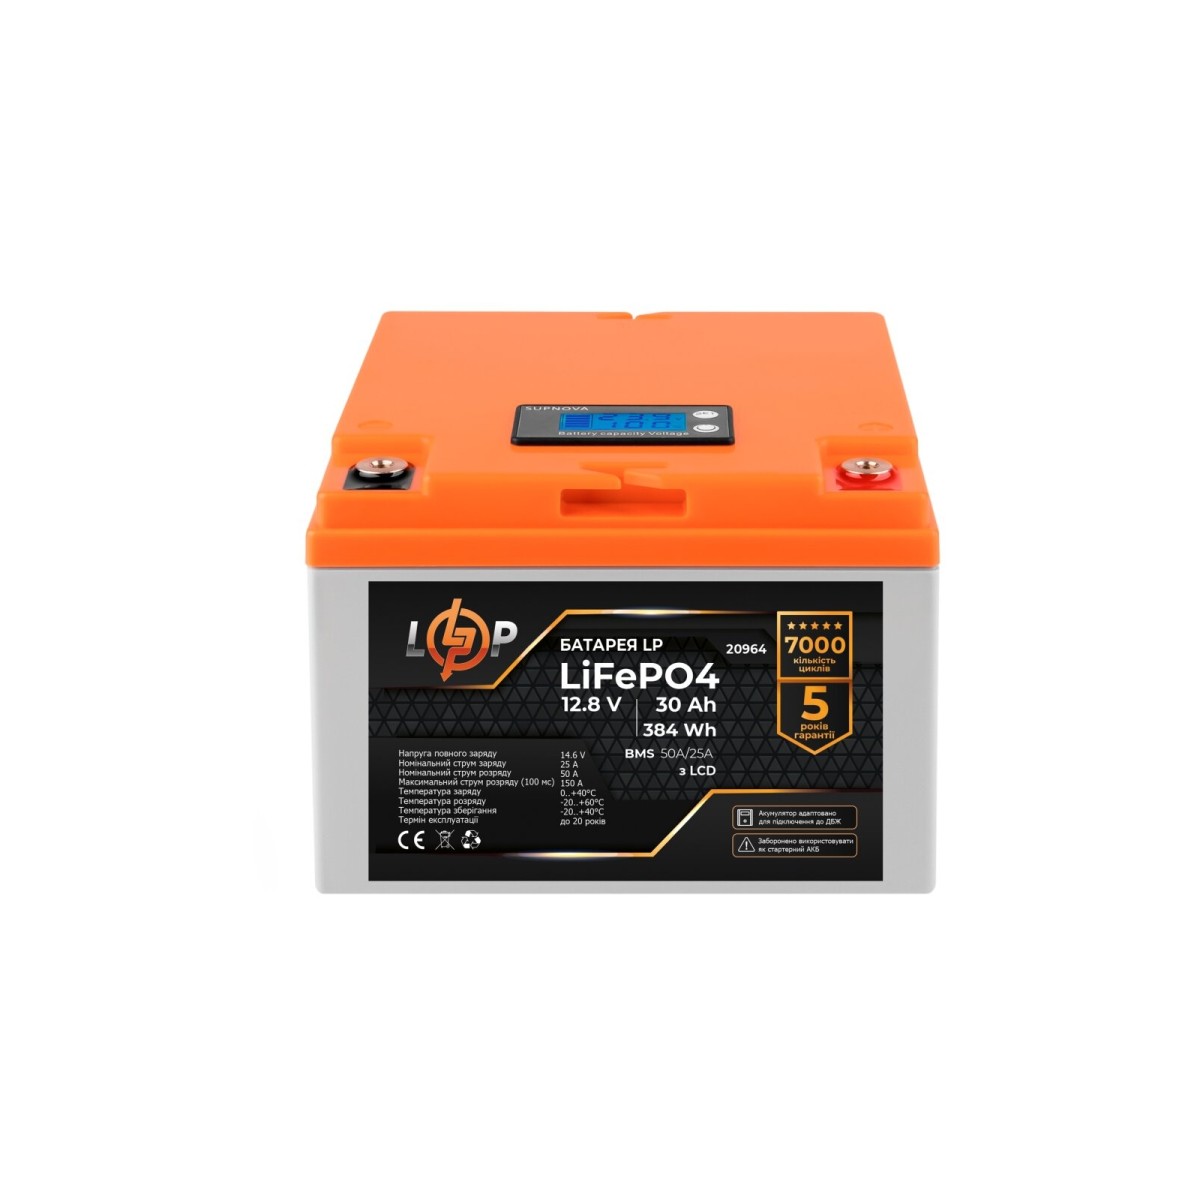 Акумулятор LP LiFePO4 для ДБЖ LCD 12V (12,8V) - 30 Ah (384Wh) (BMS 50A/25А) пластик 256_256.jpg